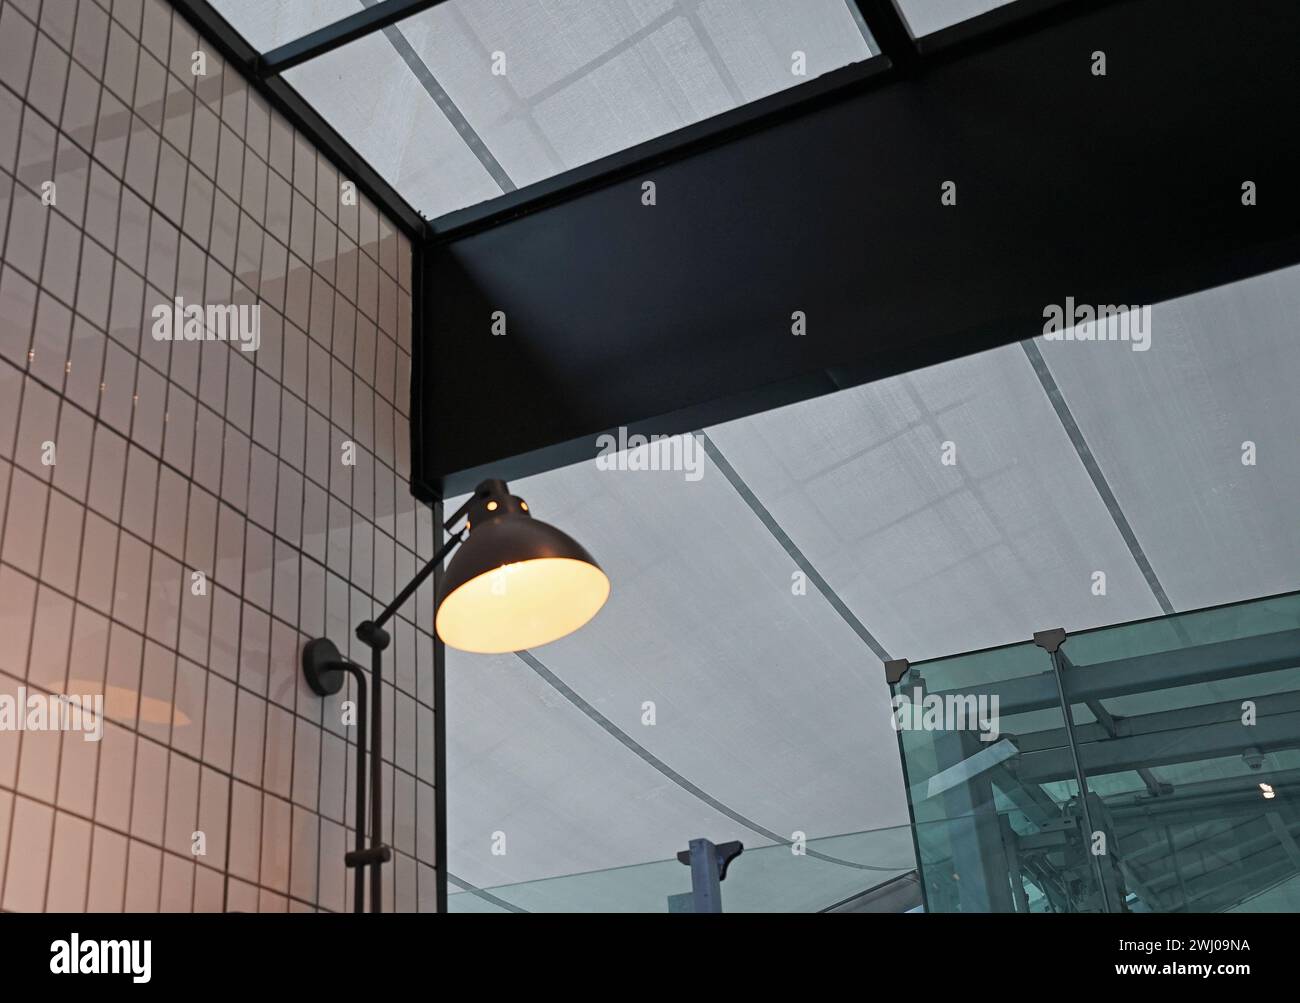 Gros plan lampe d'éclairage loft industrielle et design d'intérieur Banque D'Images